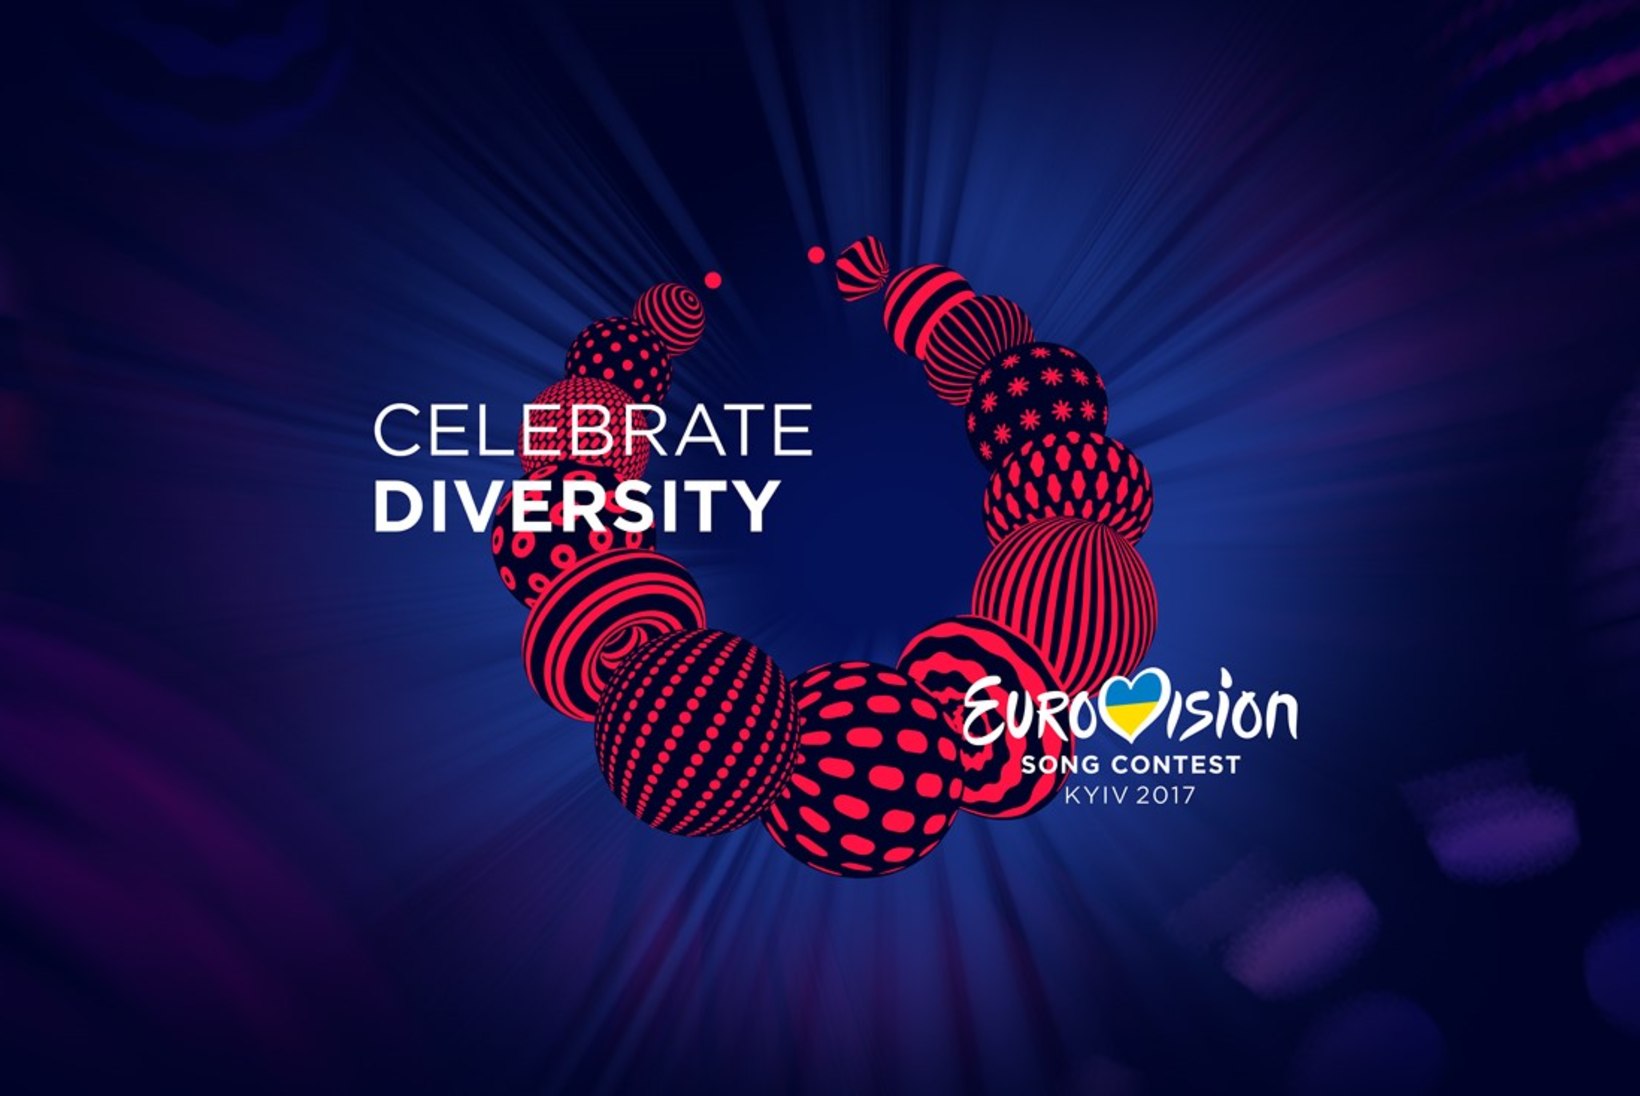 FOTOD | Tänavuse Eurovisioni lavakujundus iseloomustab seda, et Ukraina on lauluvõistluse ajal Euroopa keskpunkt